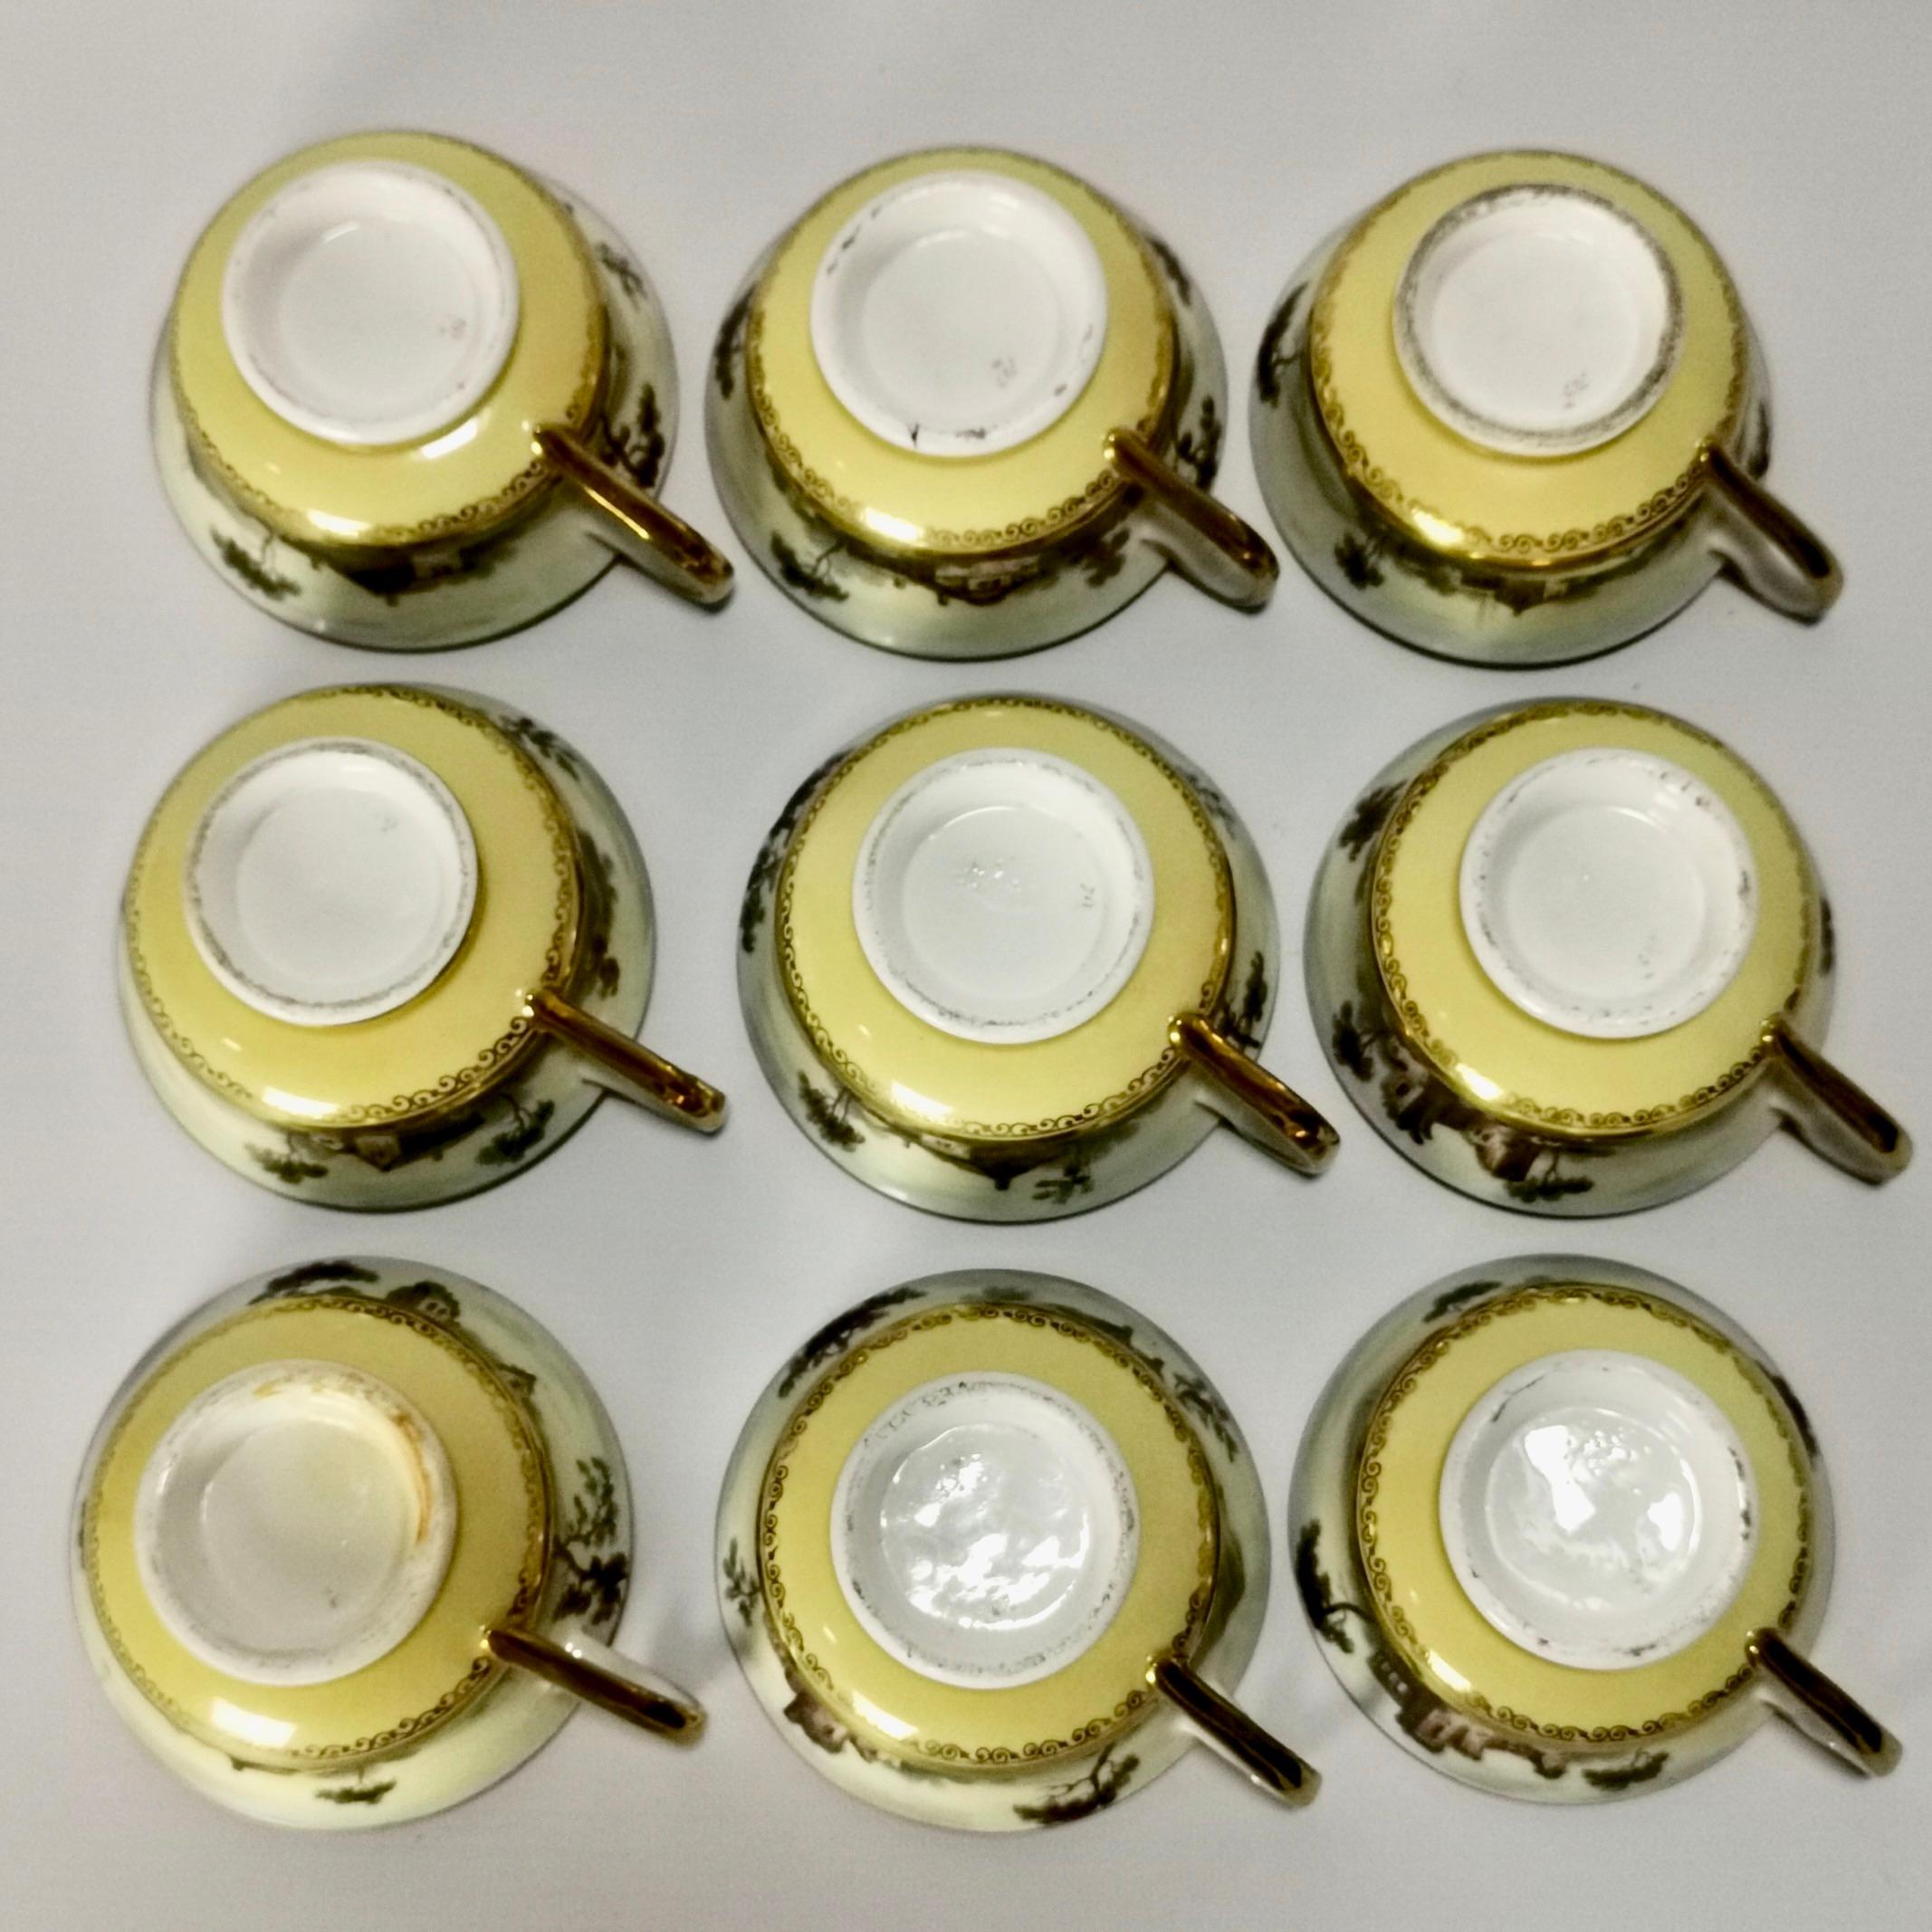 Minton Porcelain Tea Service, Yellow with Landscapes, Provenance Regency 11